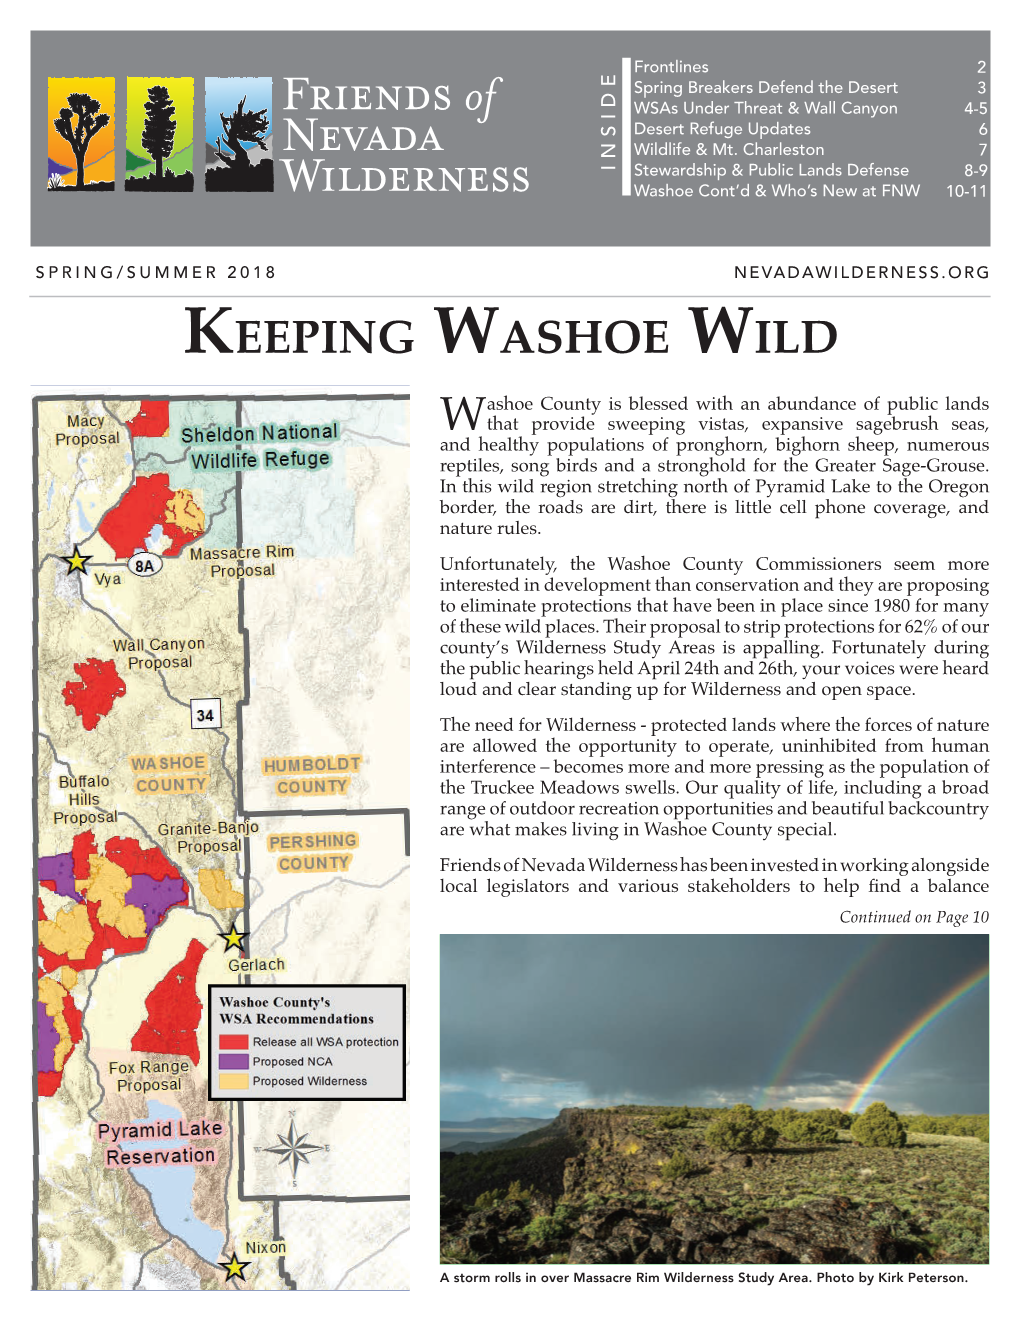 Keeping Washoe Wild